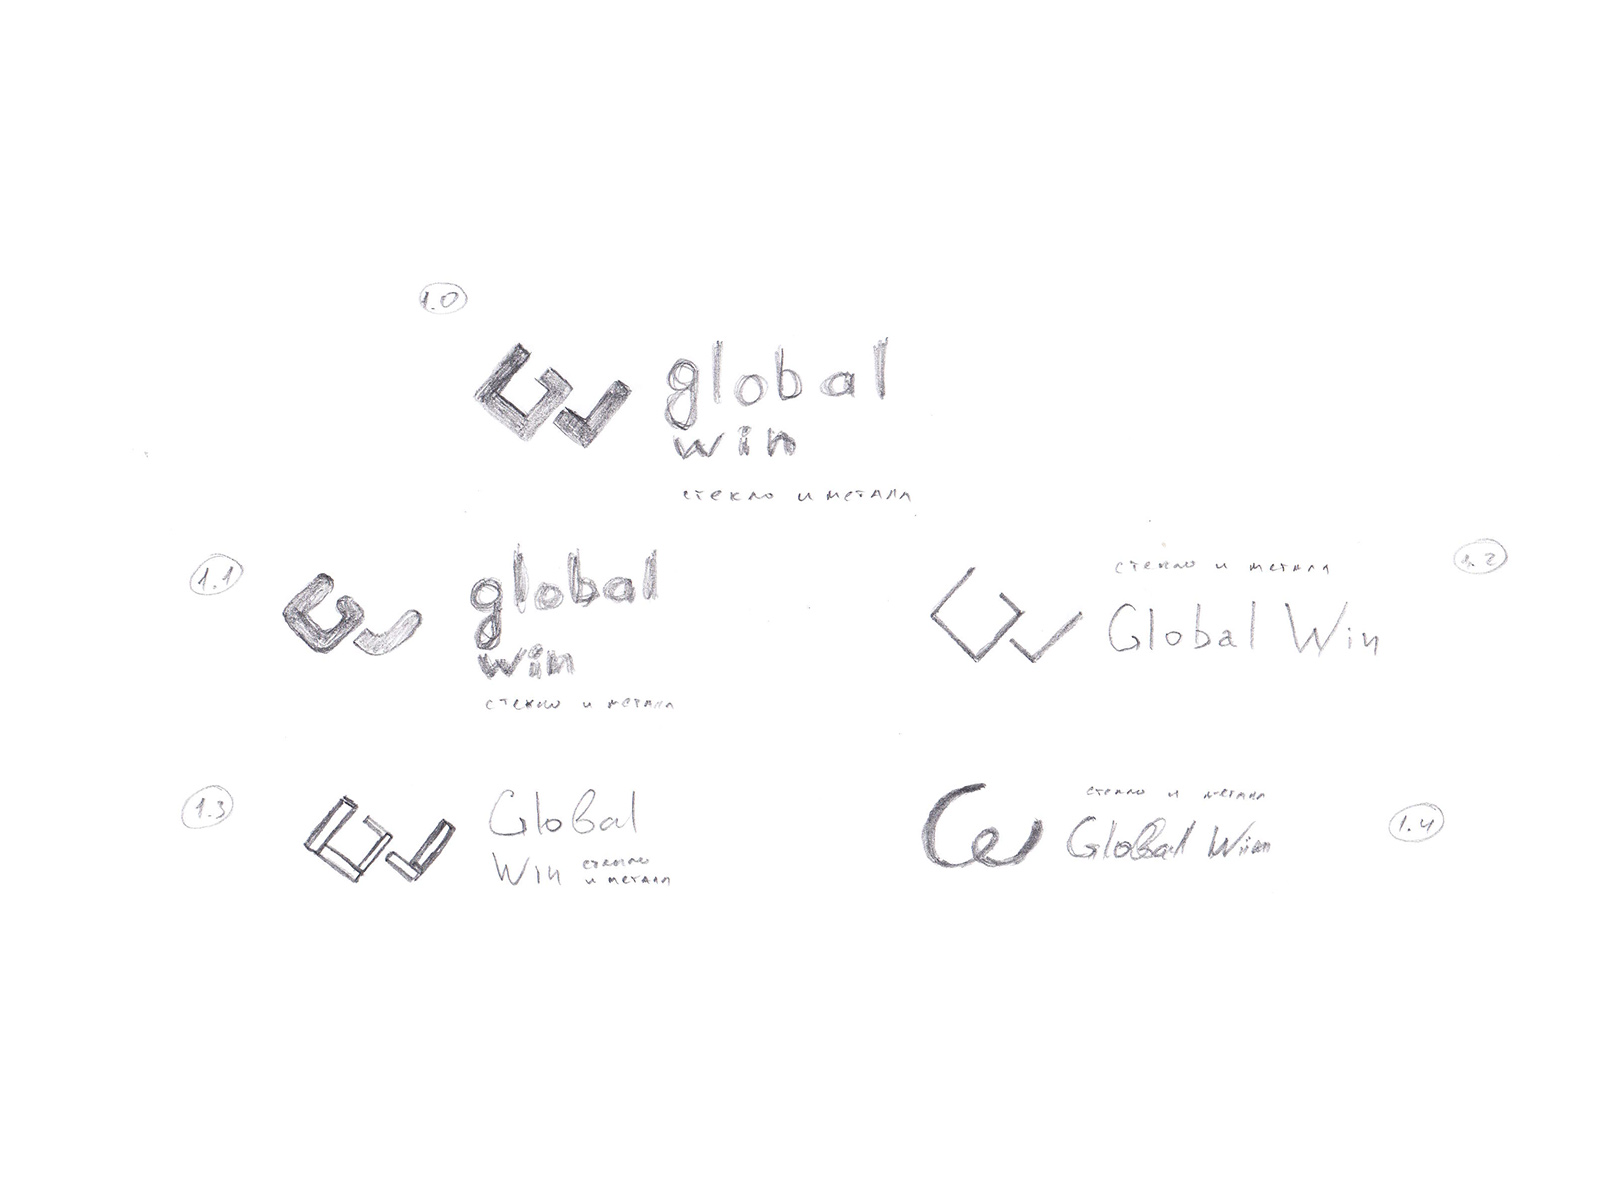 Логотип компании Global Win